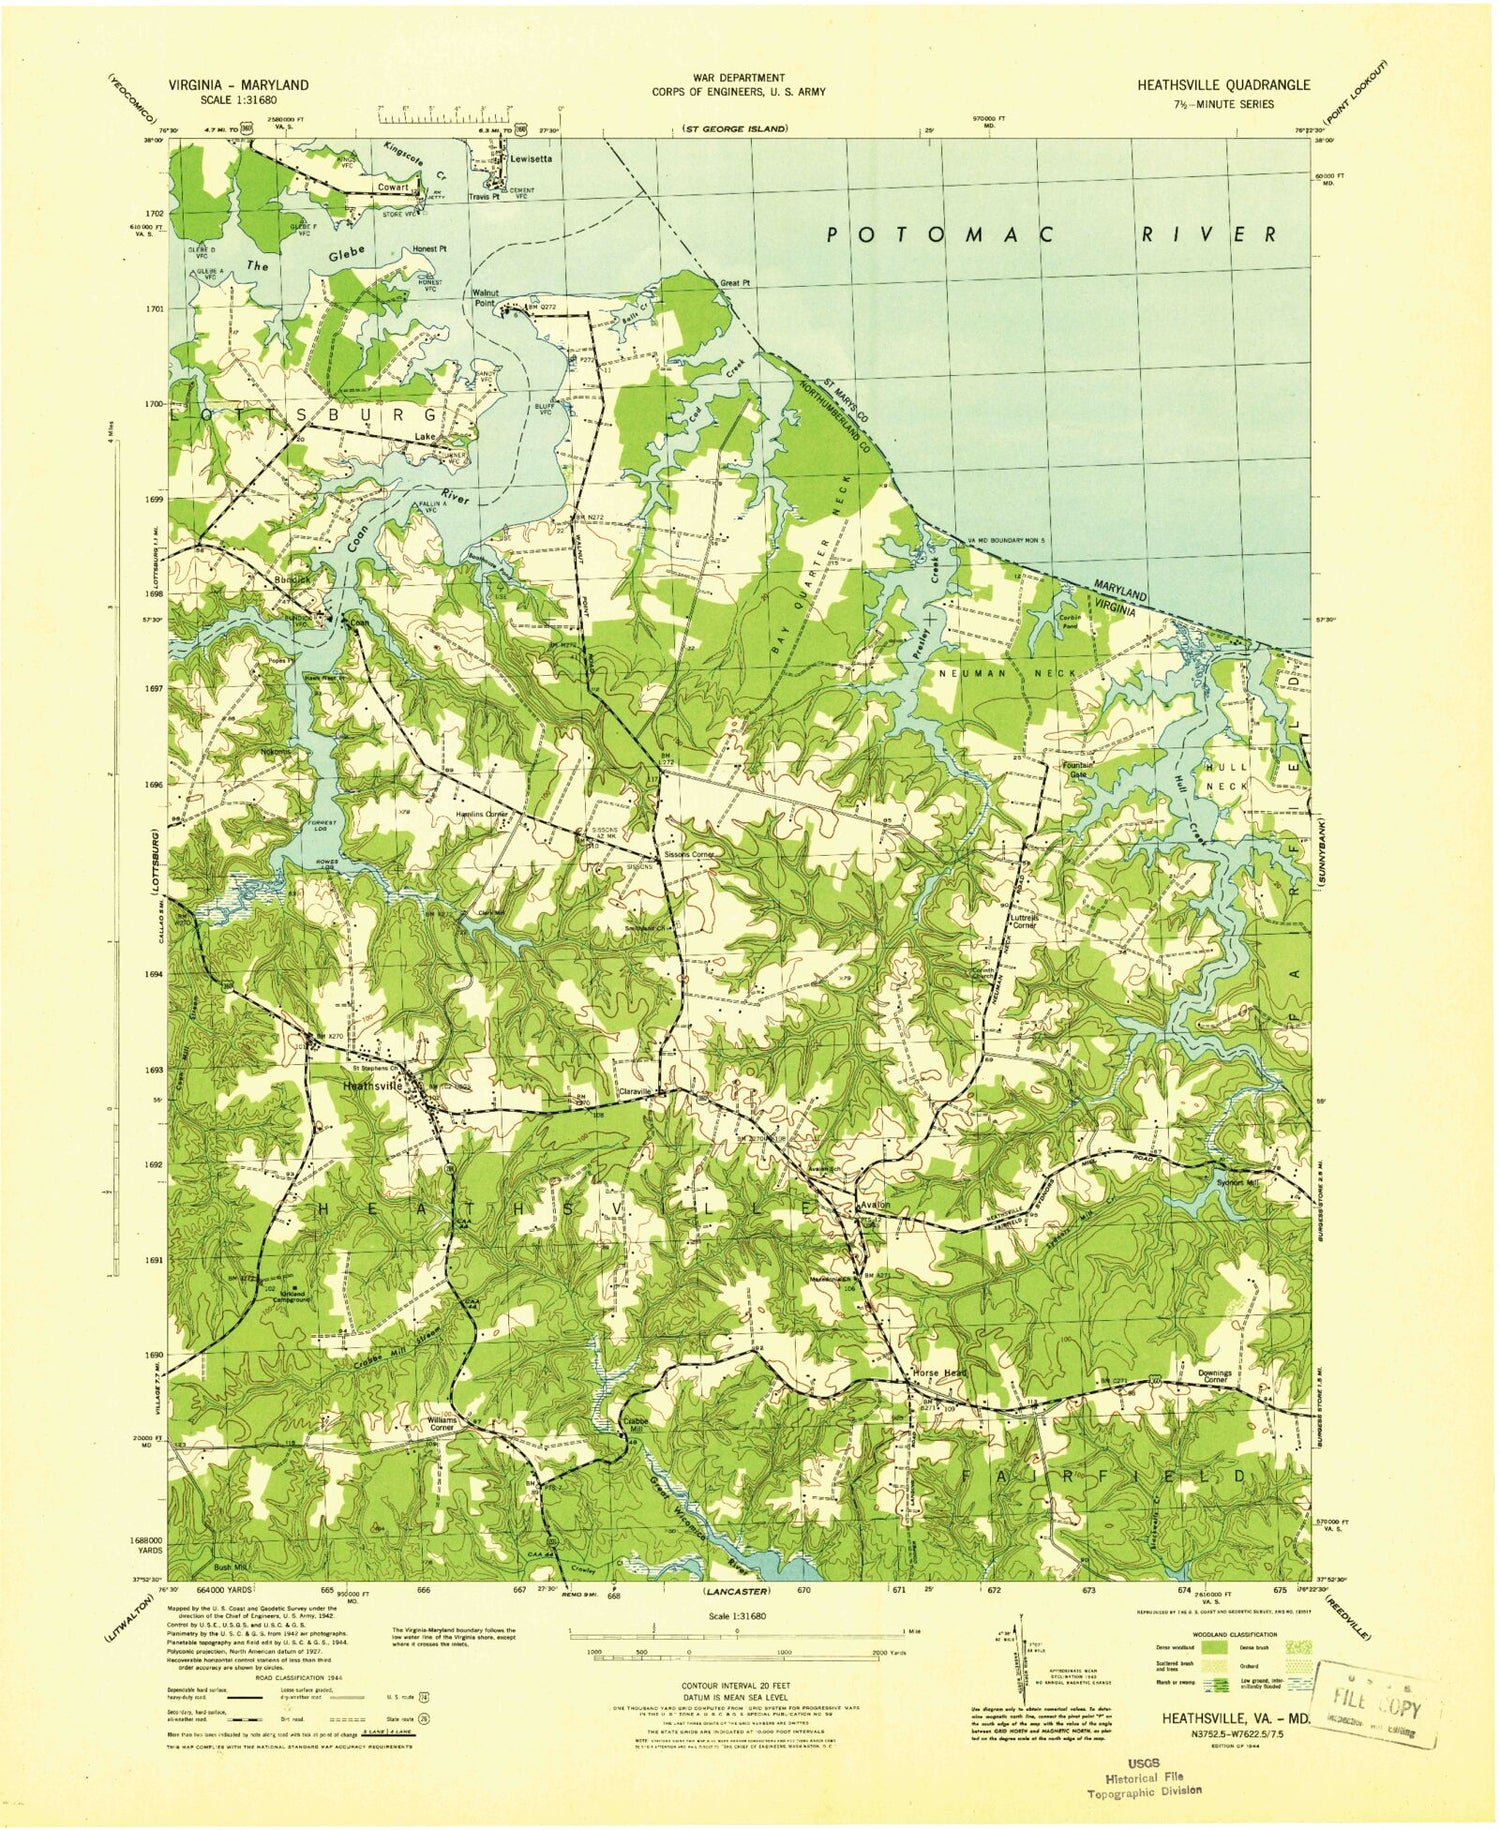 Classic USGS Heathsville Virginia 7.5'x7.5' Topo Map Image